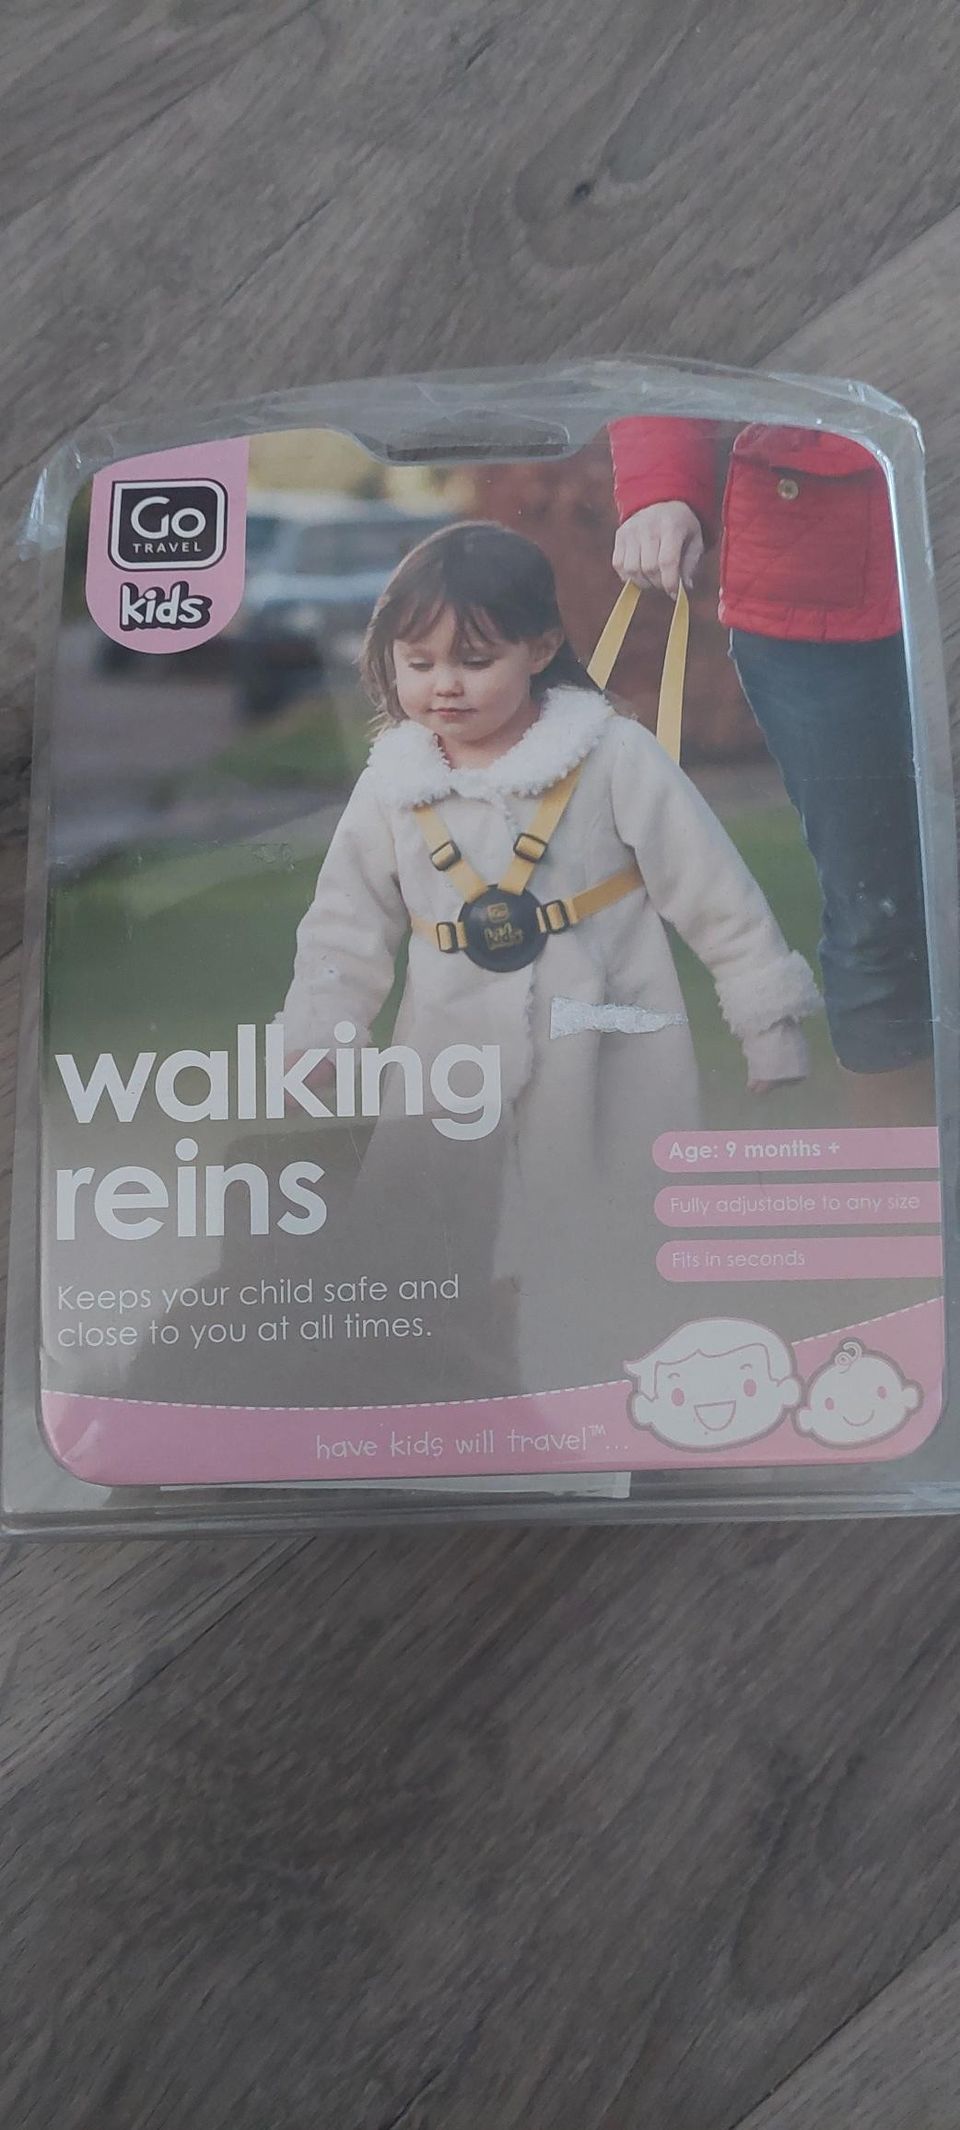 Walking reins baby/toddler uusi